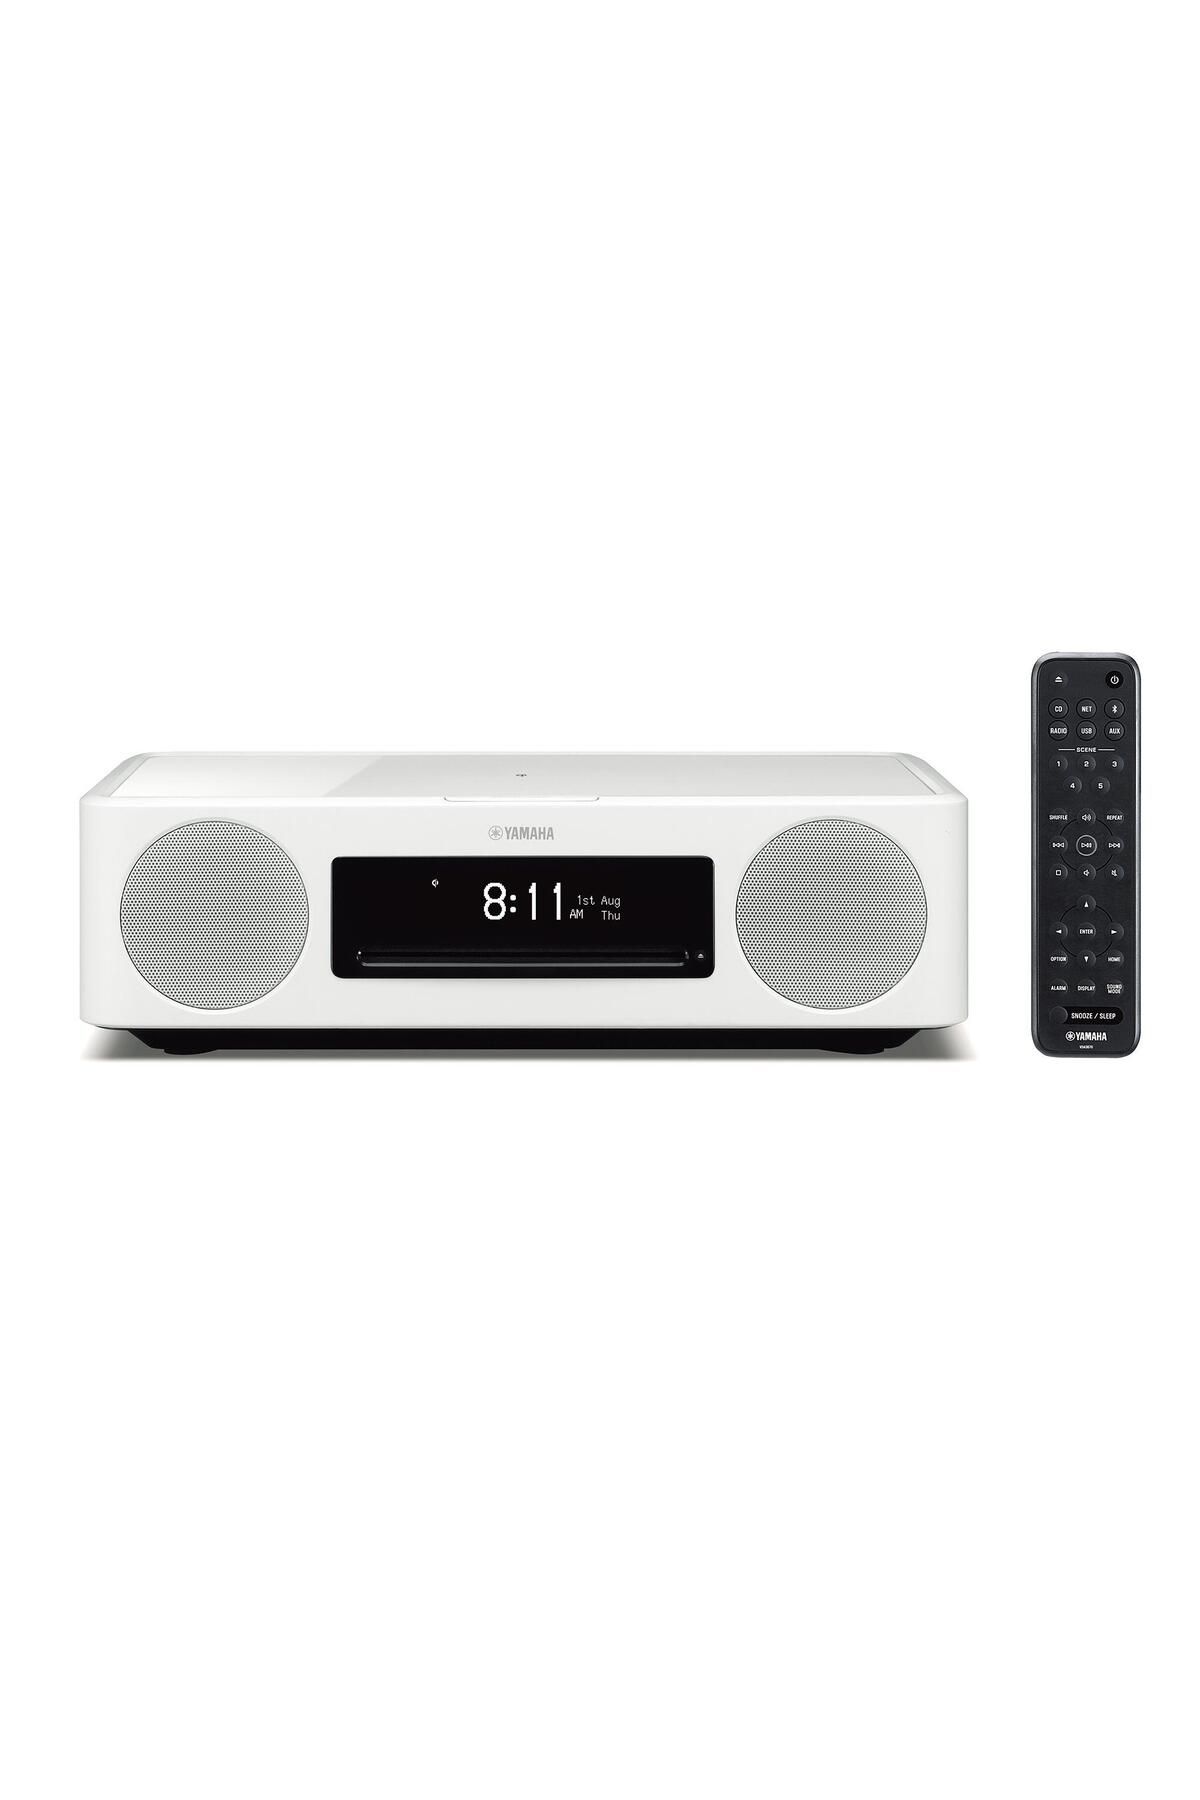 Yamaha Tsx-n237d Musiccast Network Mikro Müzik Sistemi Beyaz